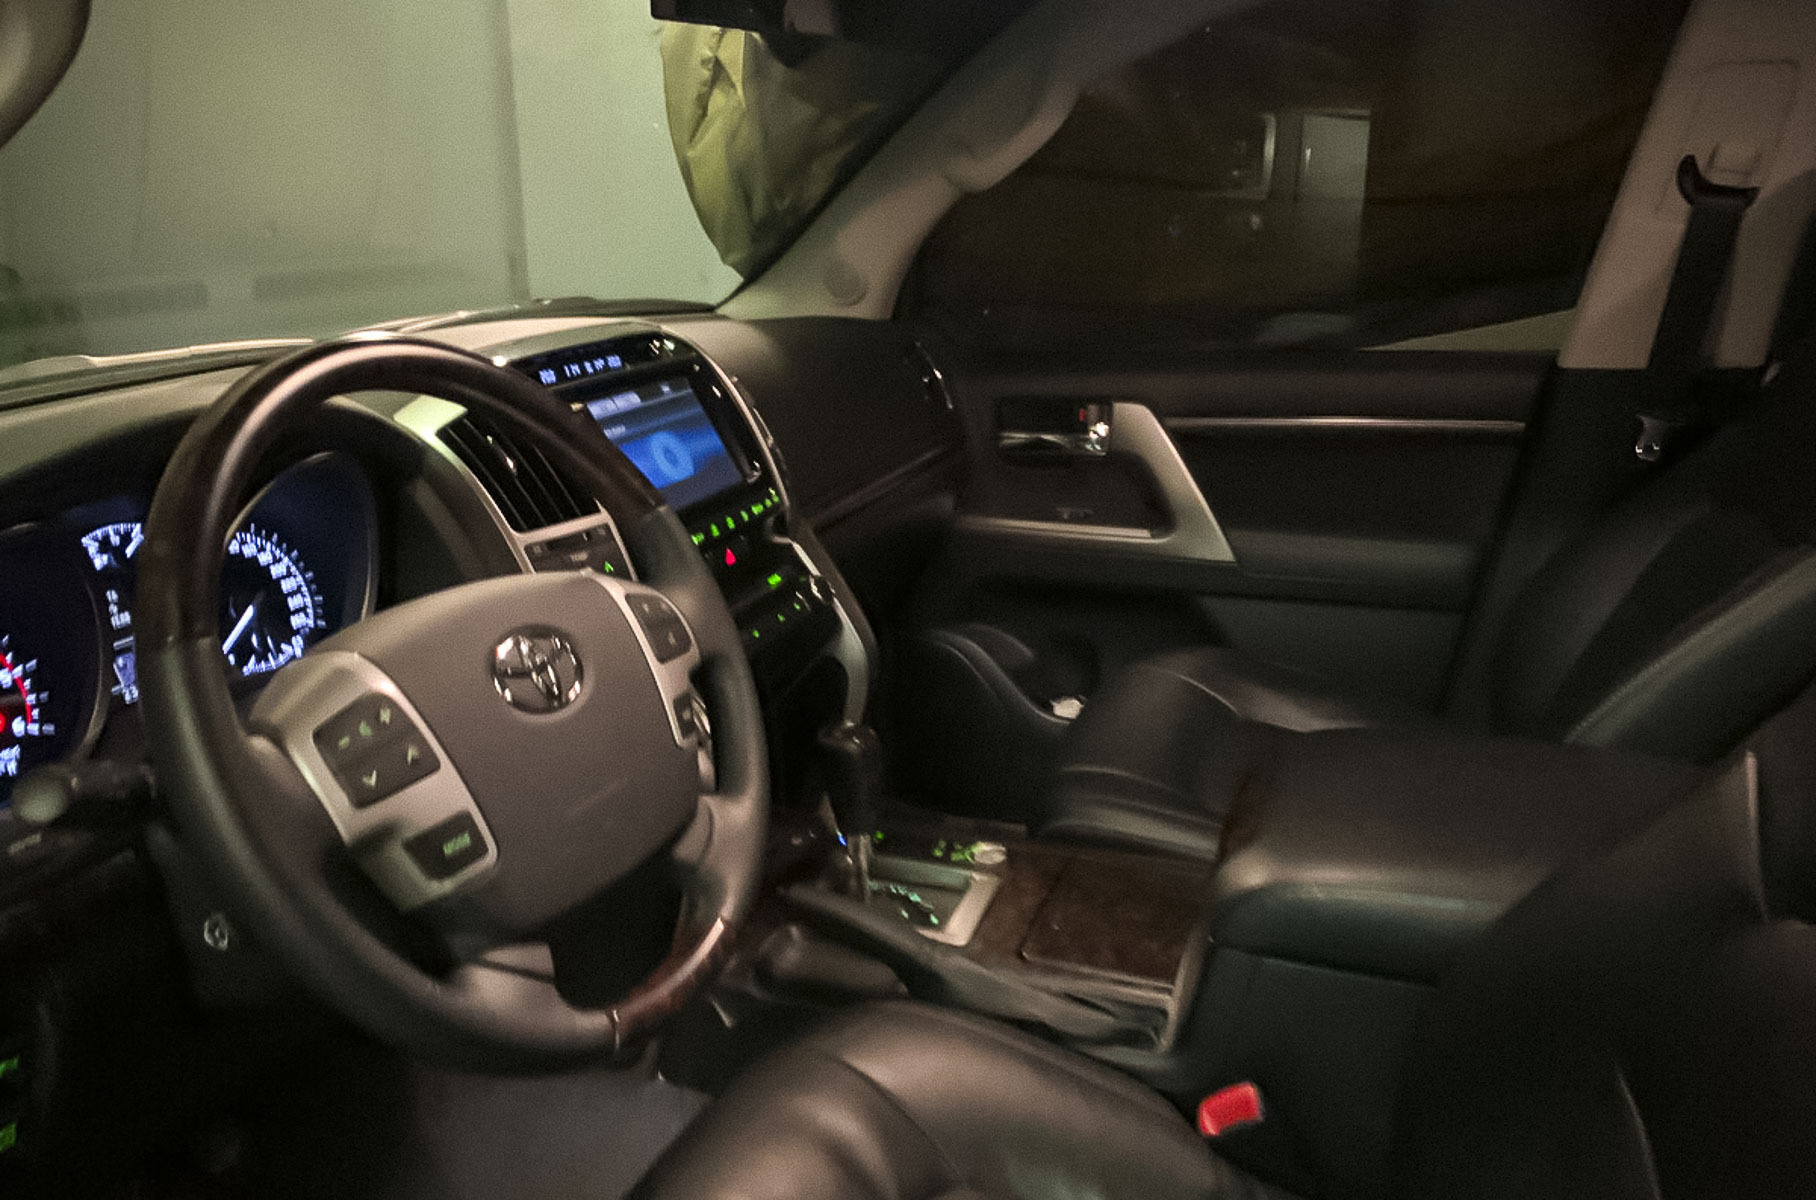 Подержанный Toyota Land Cruiser 200 продают в Москве дороже нового Land Cruiser 300